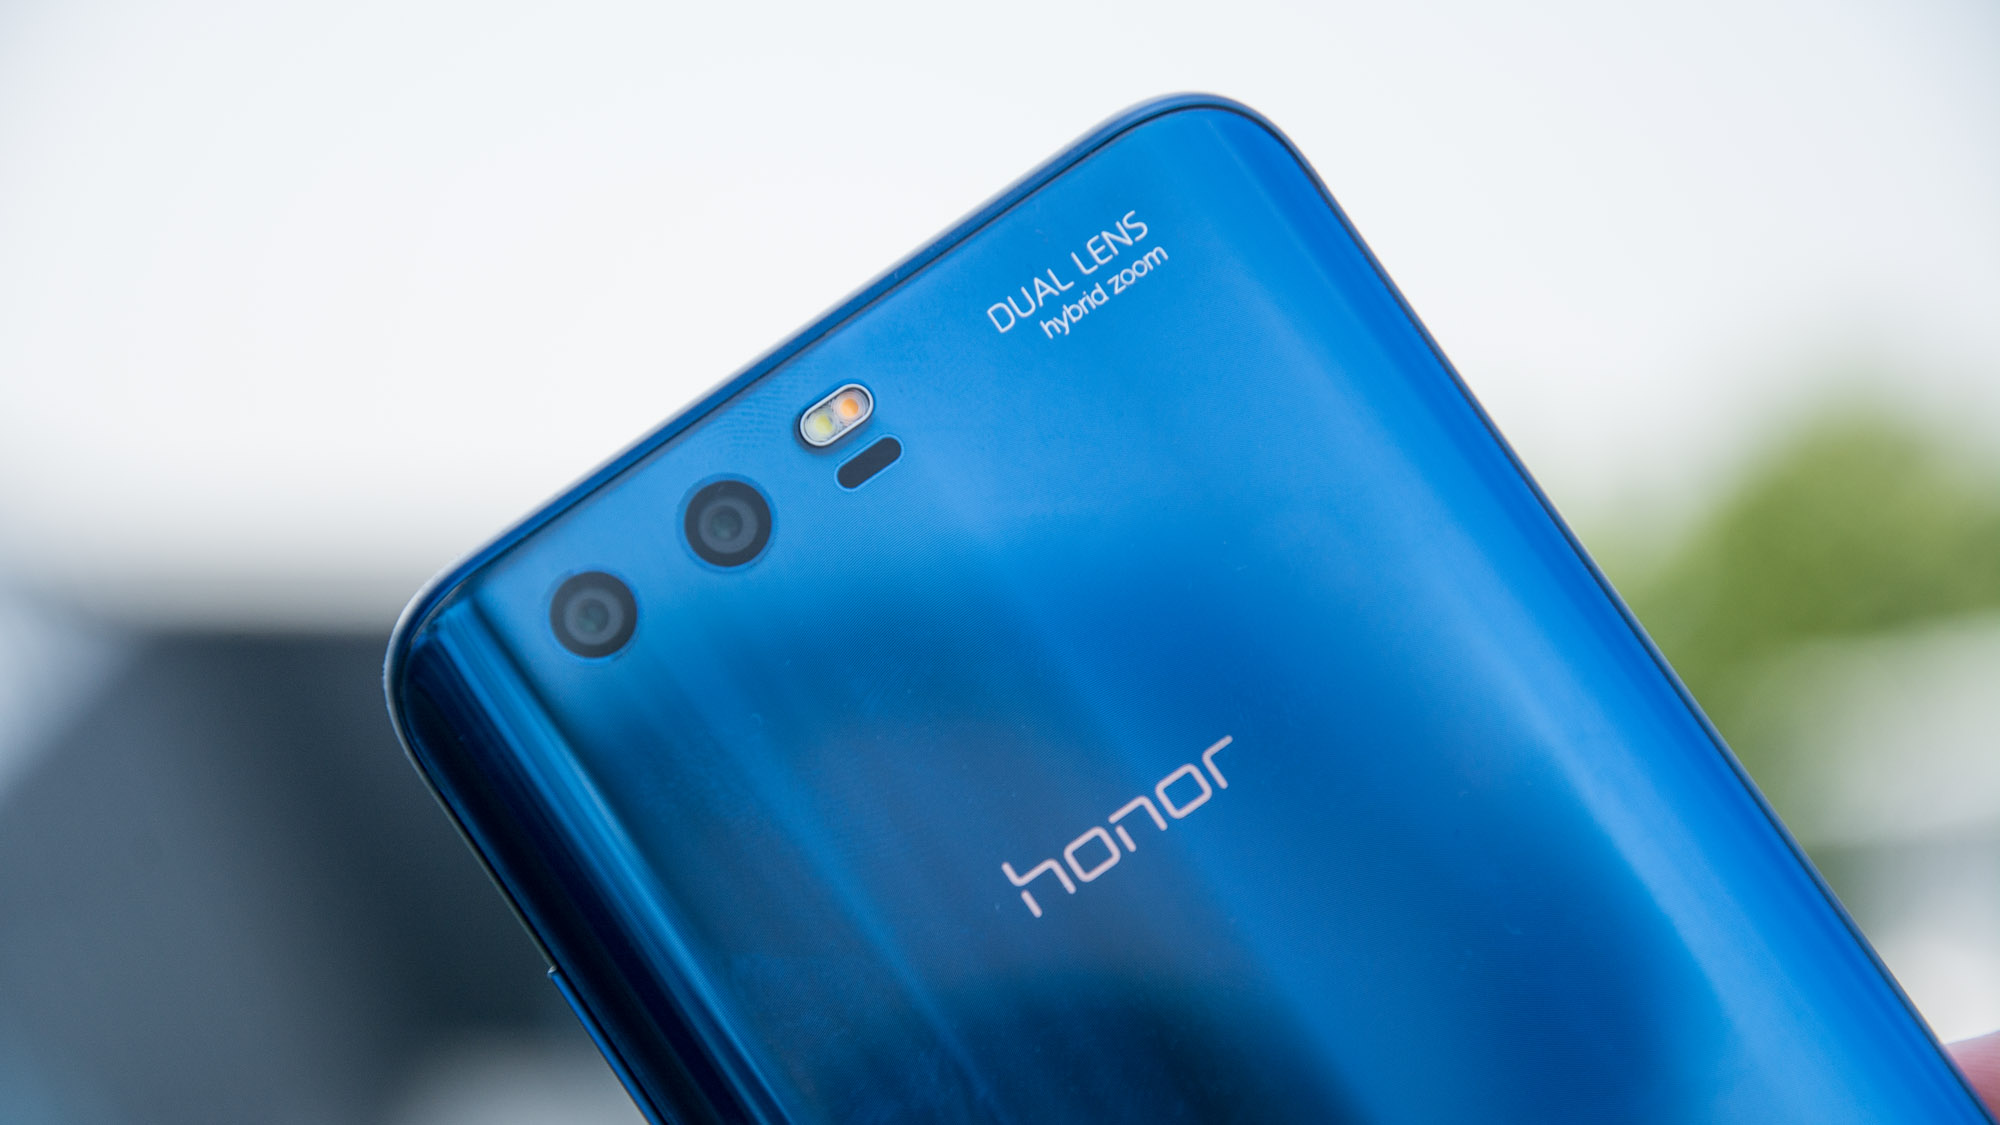 Recenze Honor 9: Skvělý telefon, který nyní stojí pouze 300 GBP